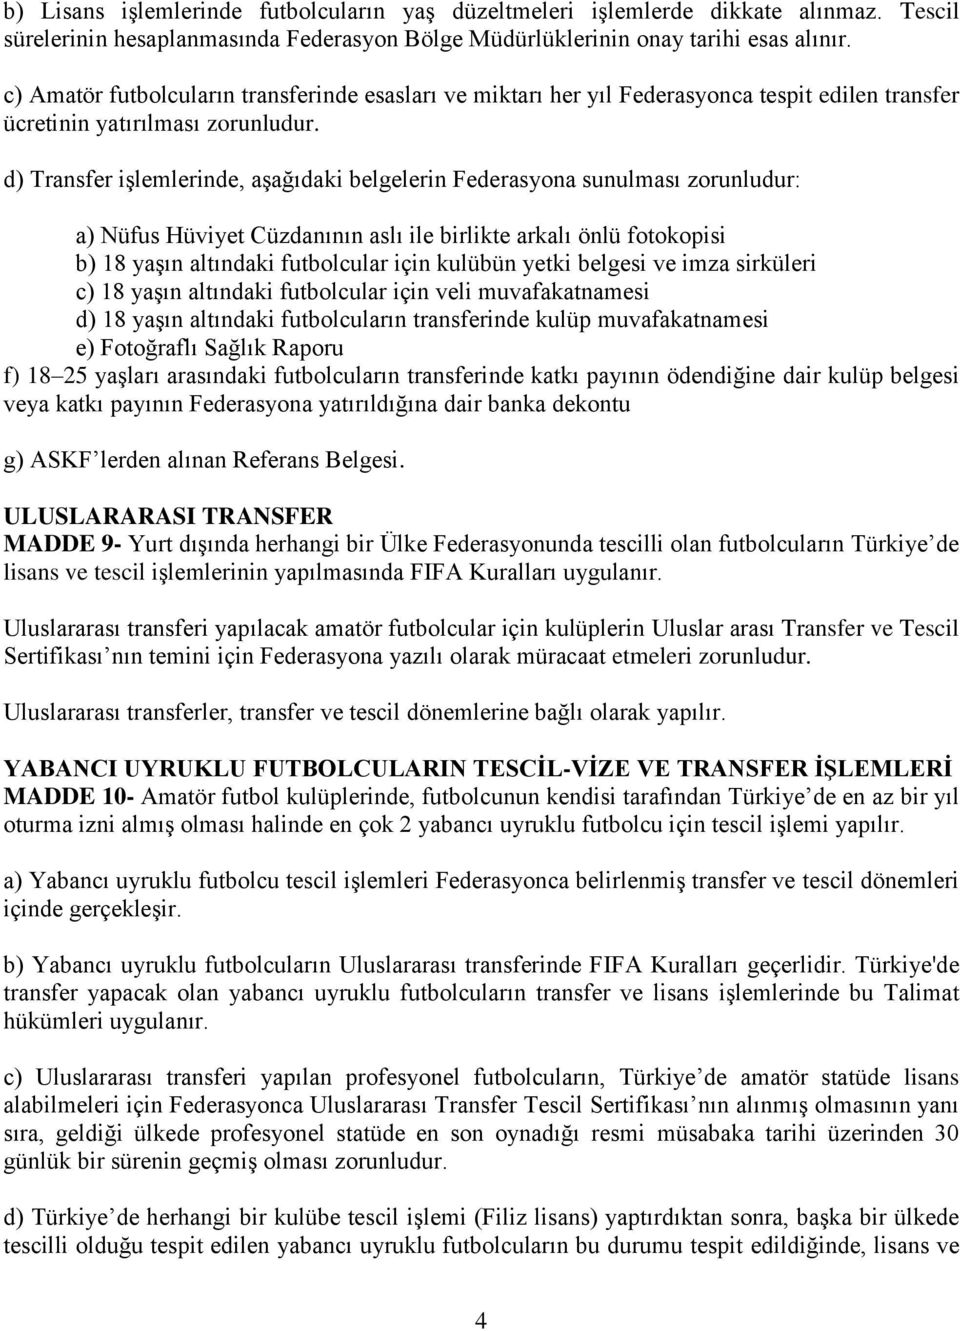 d) Transfer işlemlerinde, aşağıdaki belgelerin Federasyona sunulması zorunludur: a) Nüfus Hüviyet Cüzdanının aslı ile birlikte arkalı önlü fotokopisi b) 18 yaşın altındaki futbolcular için kulübün